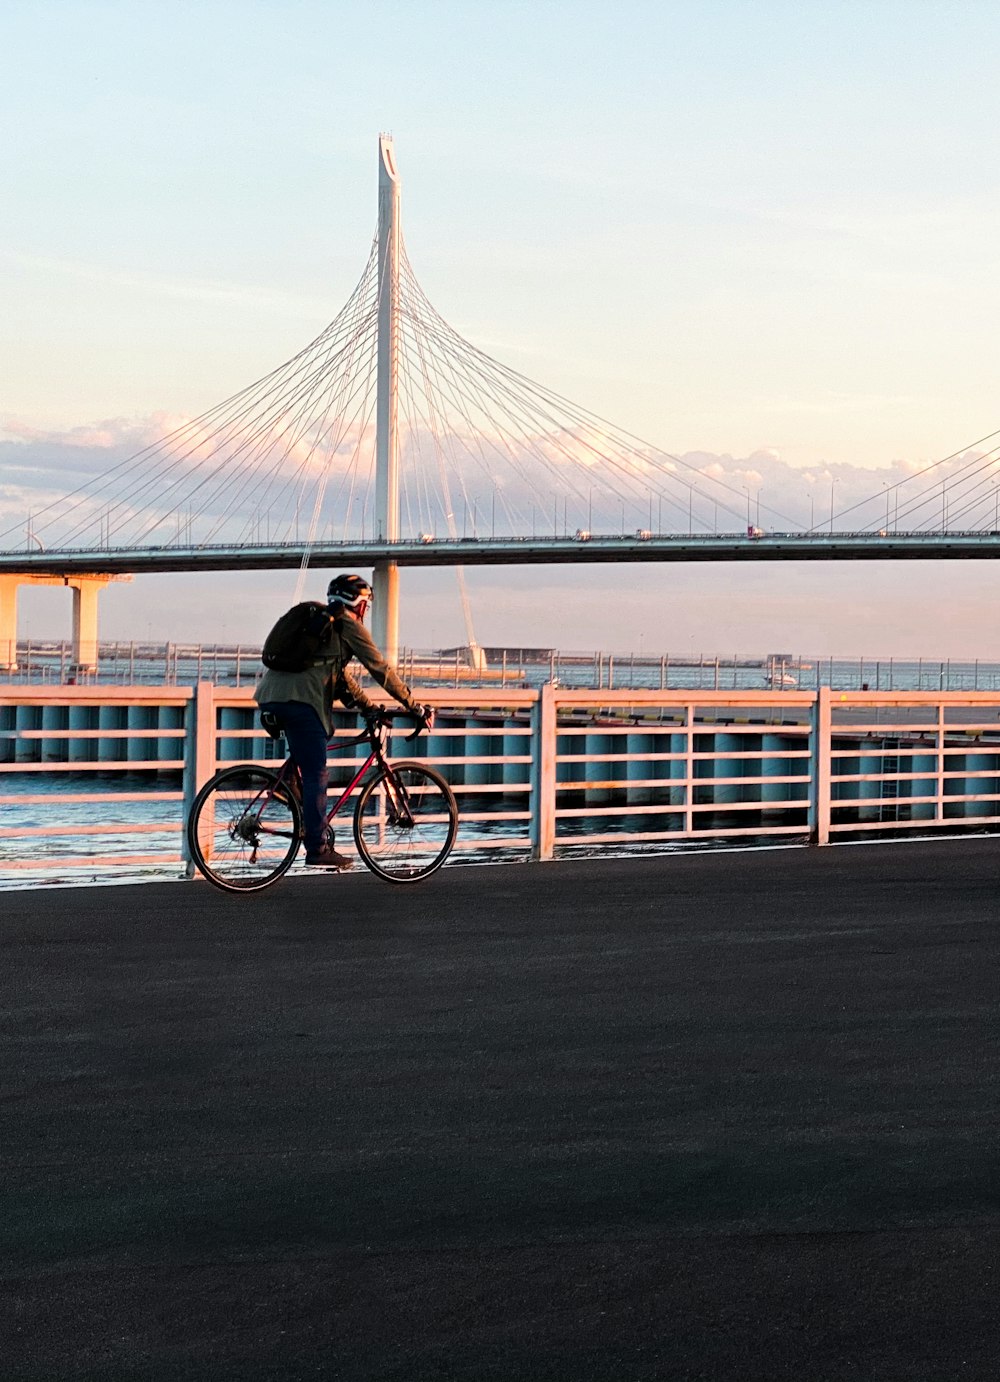 man in black shirt riding bicycle on bridge during daytime